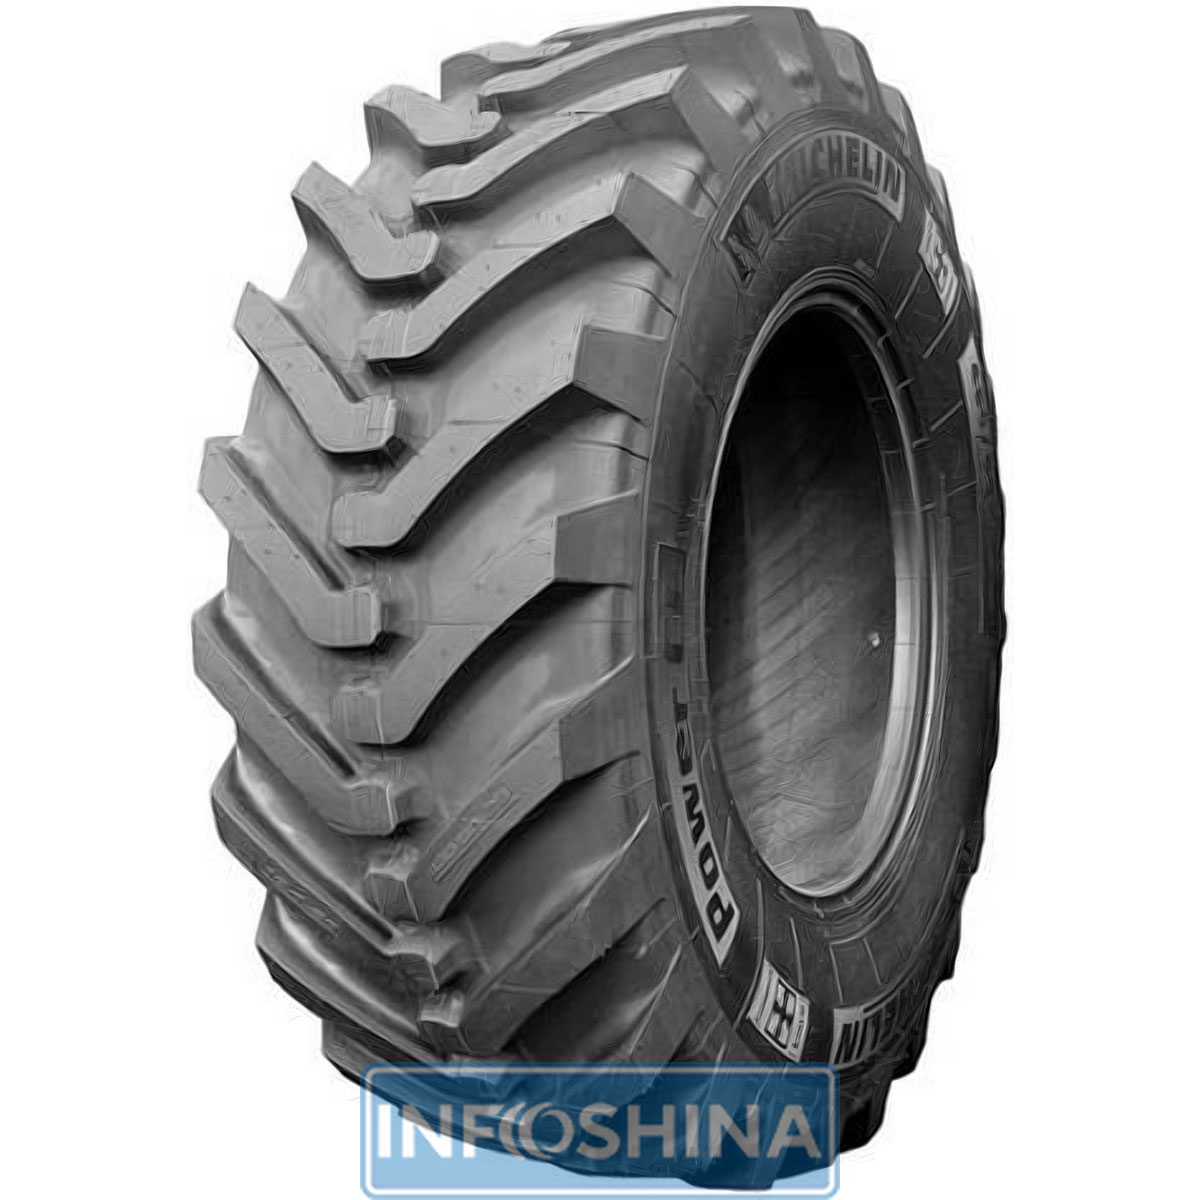 Купить шины Michelin Power CL (универсальная) 440/80-28 163A8